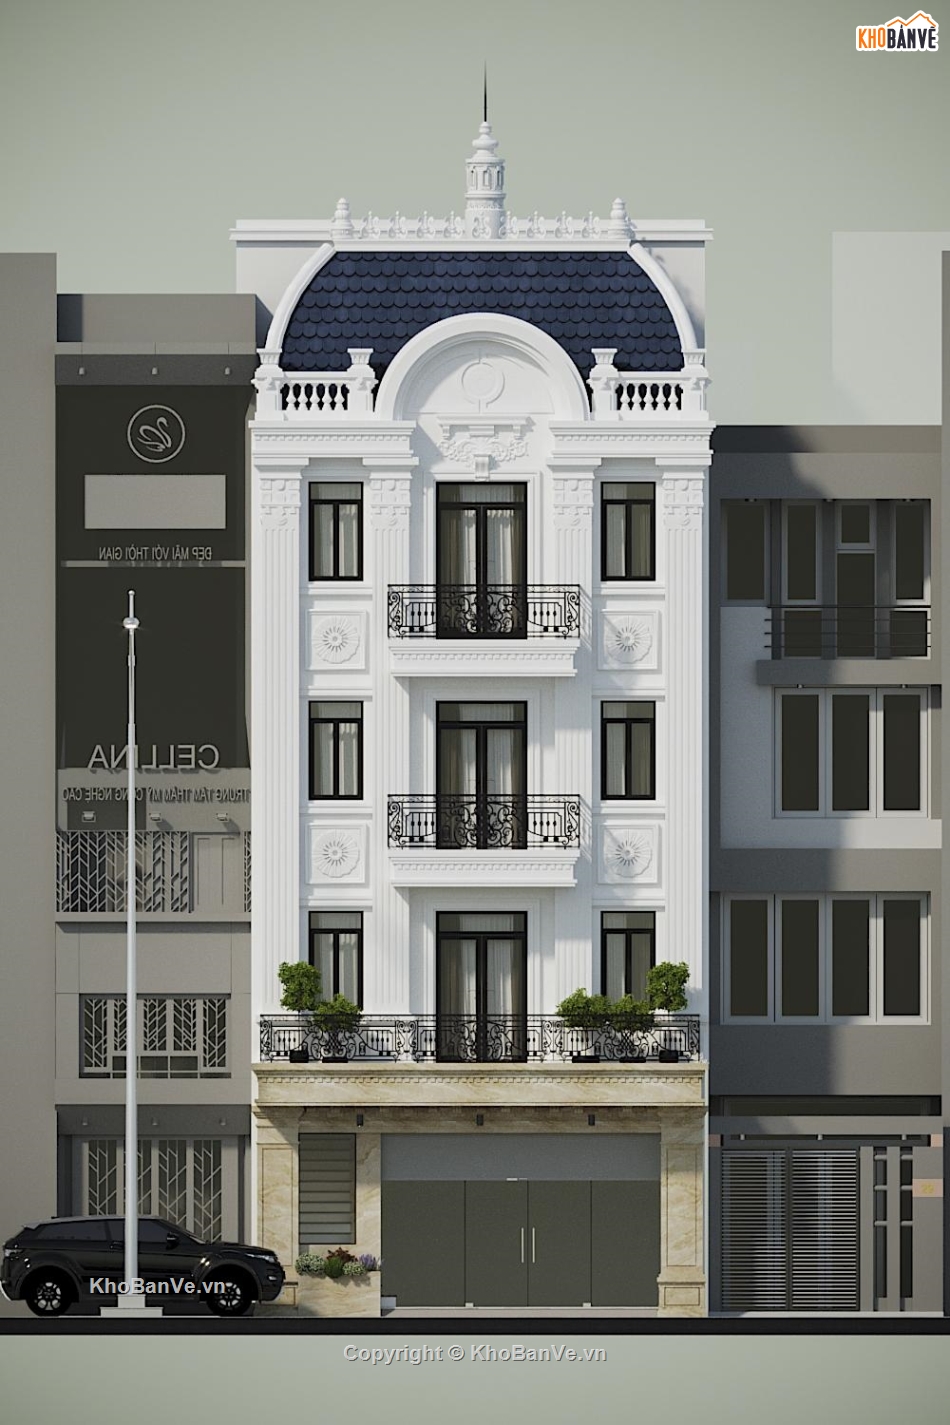 Nhà phố 4 tầng,bản vẽ nhà phố 4 tầng,Bản vẽ nhà phố 4 tầng đẹp,Autocad bản vẽ nhà phố 4 tầng